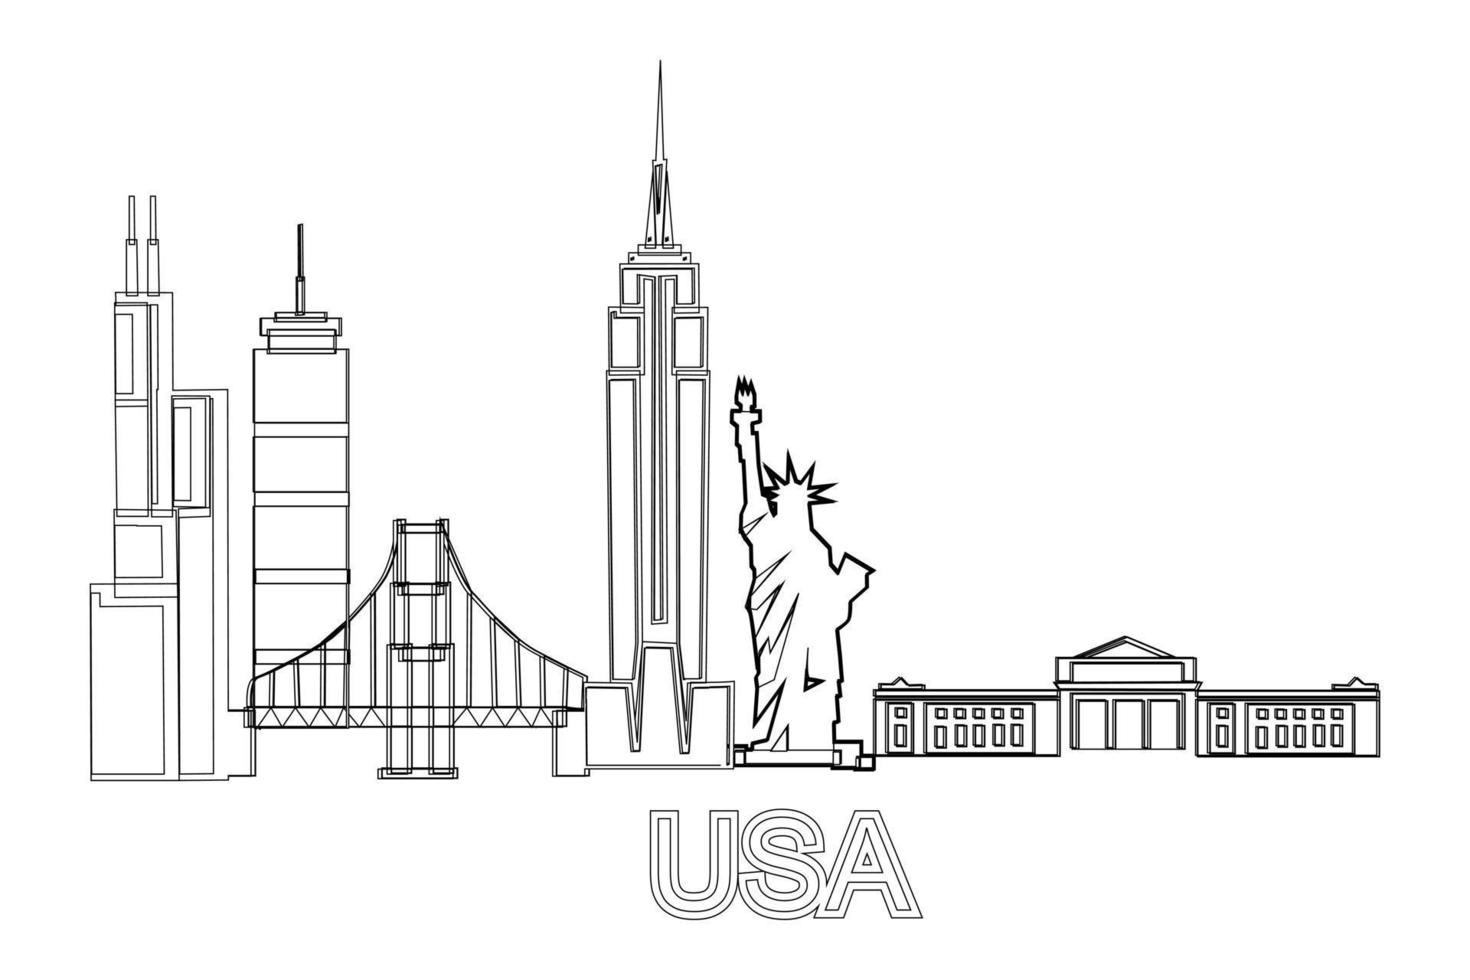 skyline delle città degli stati uniti d'america. concetto di stampa del manifesto di vacanza di viaggio di turismo del paesaggio degli stati uniti. illustrazione vettoriale in bianco e nero.